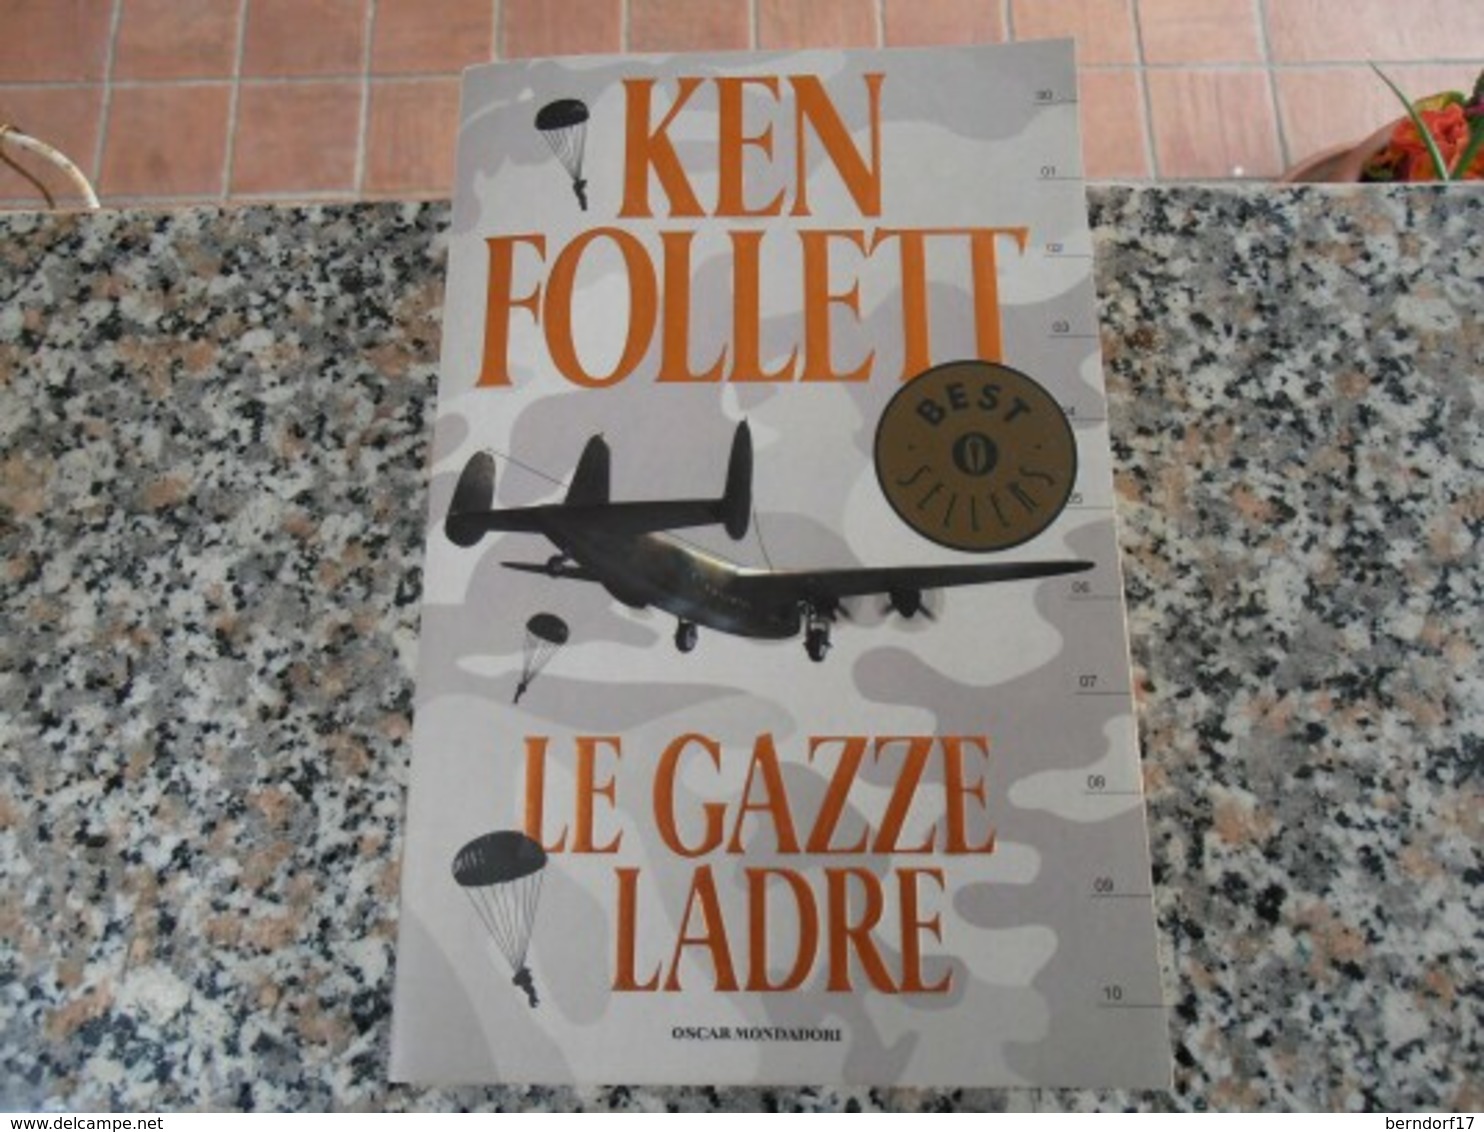 Le Gazze Ladre - Ken Follet - Action & Adventure